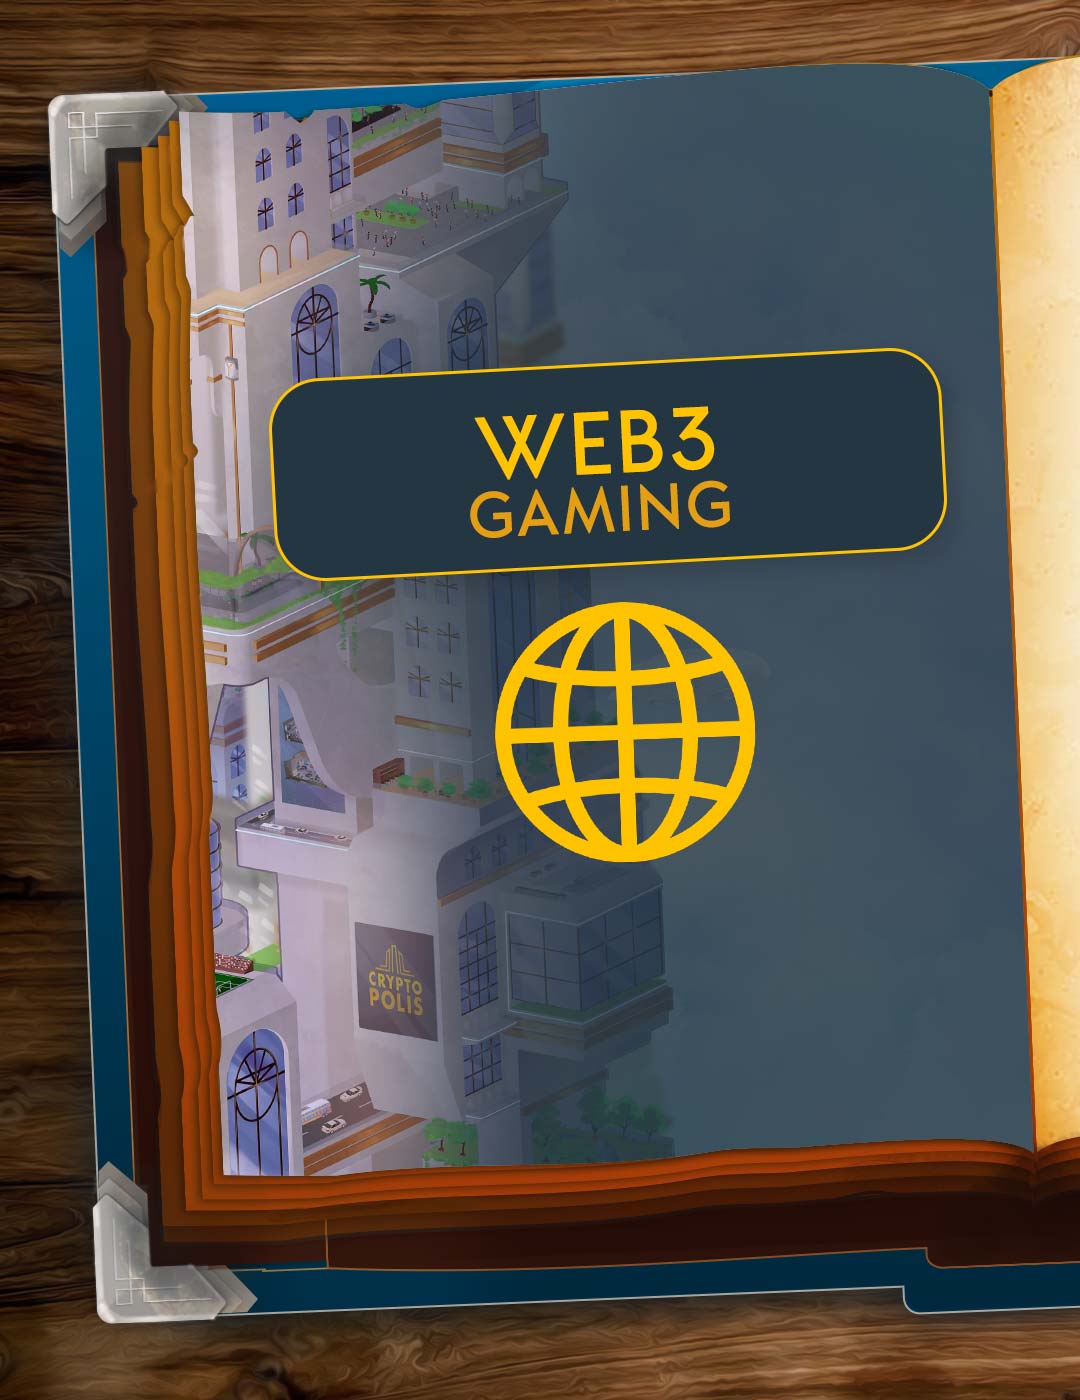 Web3 gaming